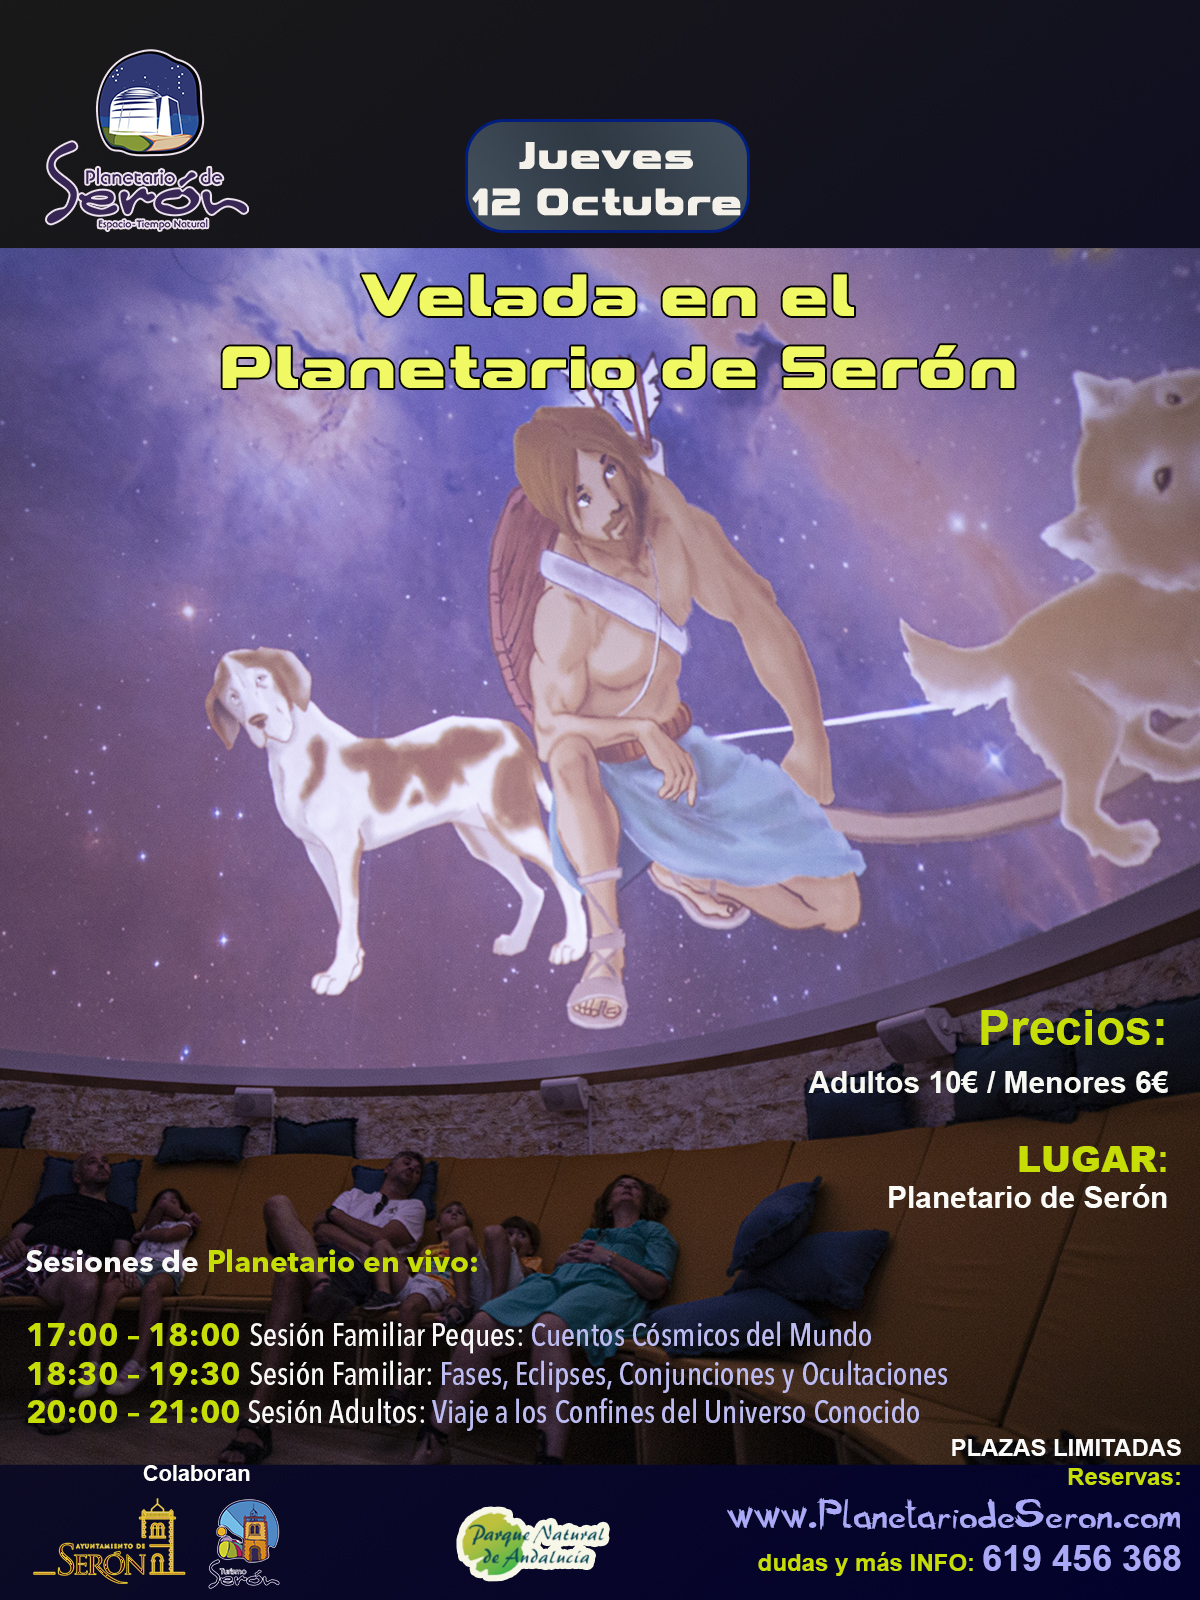 Velada en el Planetario de Serón Almería